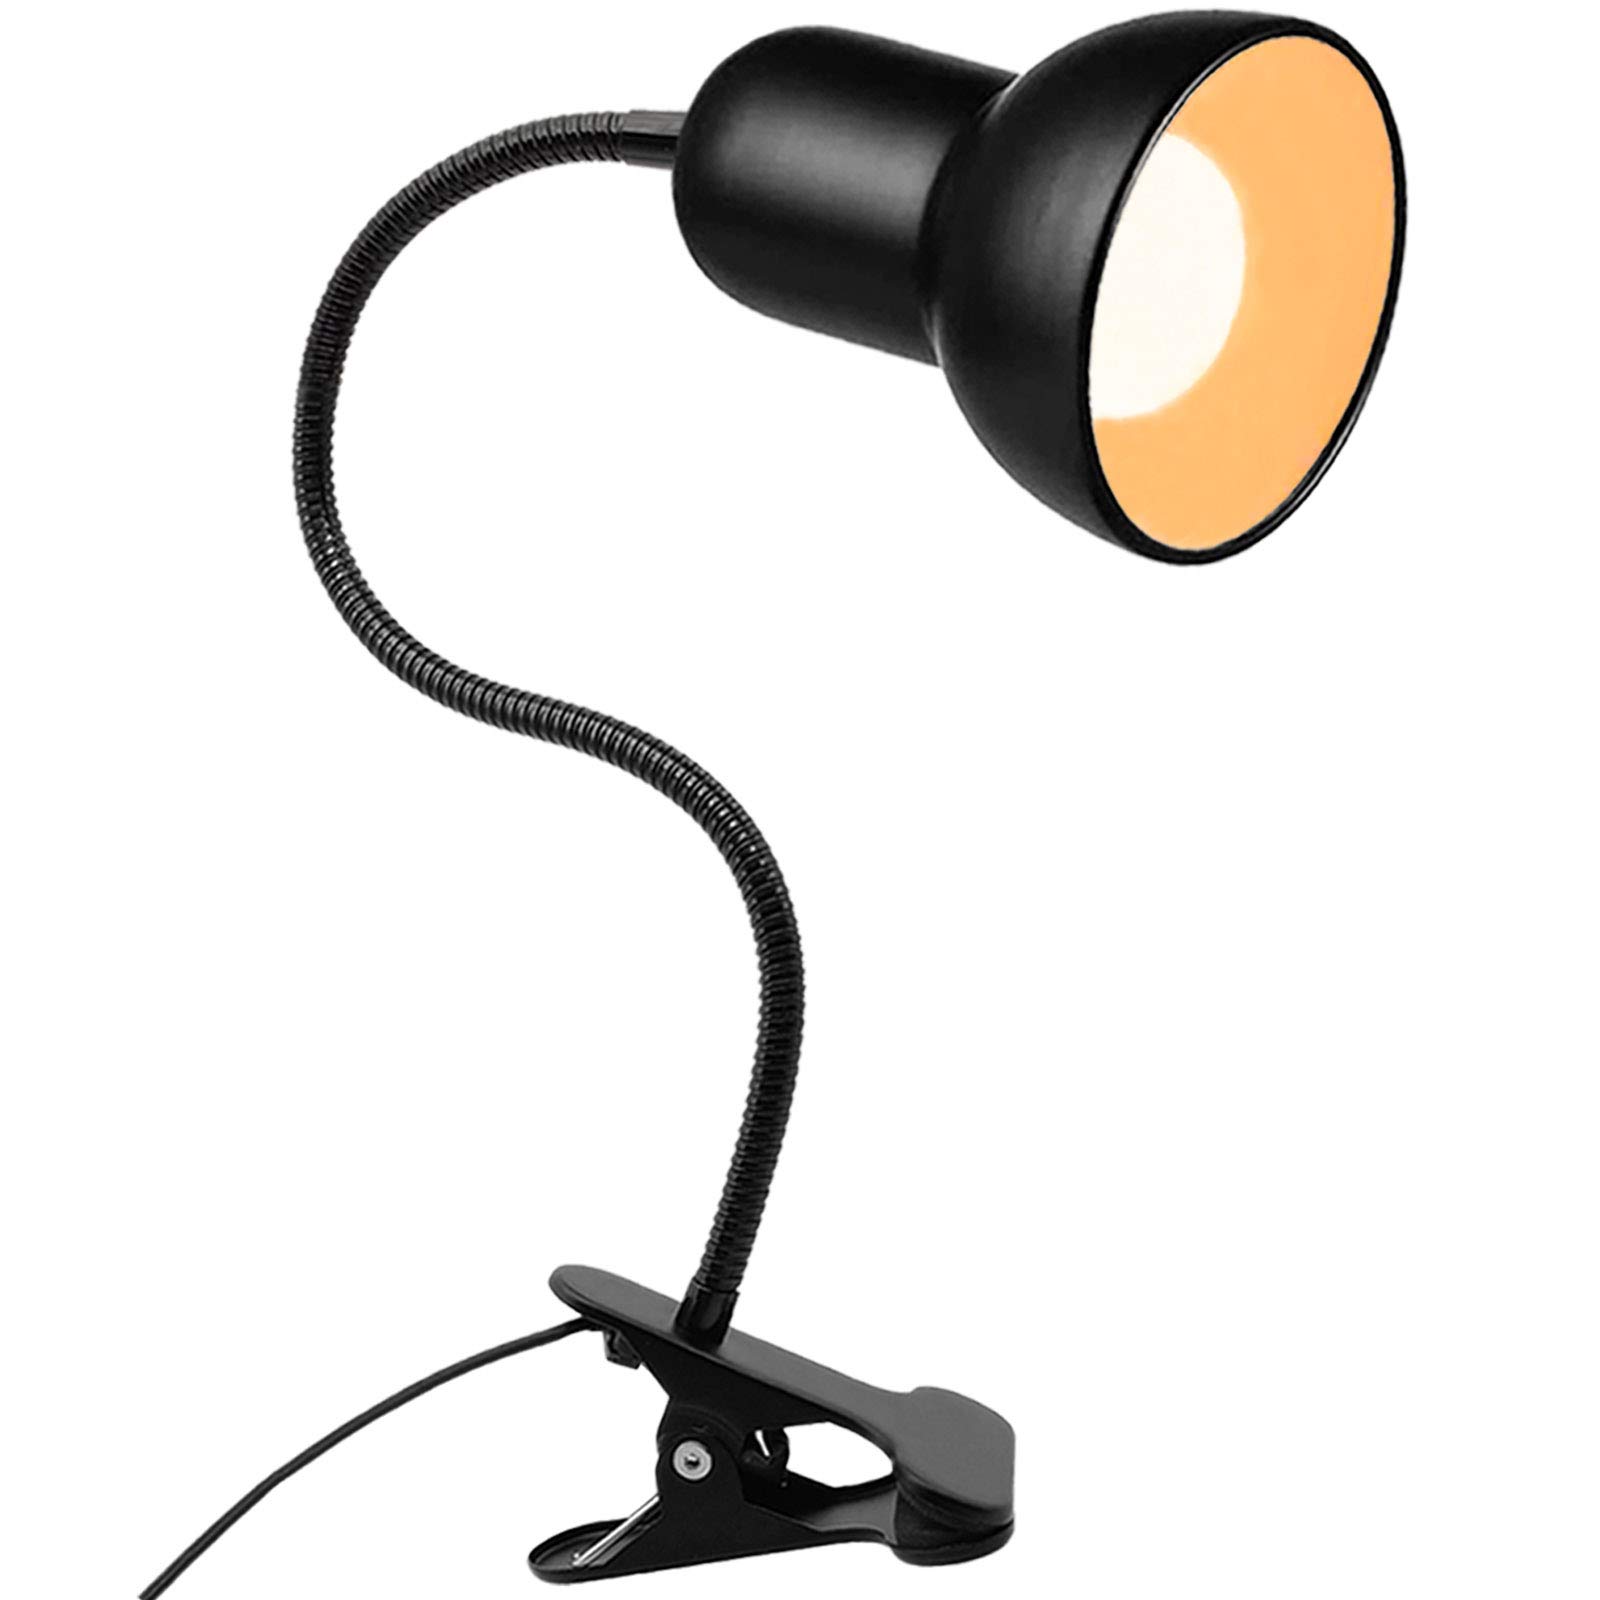 Desk lamp, 360°Rotation Clip on Lamp, Clip On Reading Light, Gooseneck ...